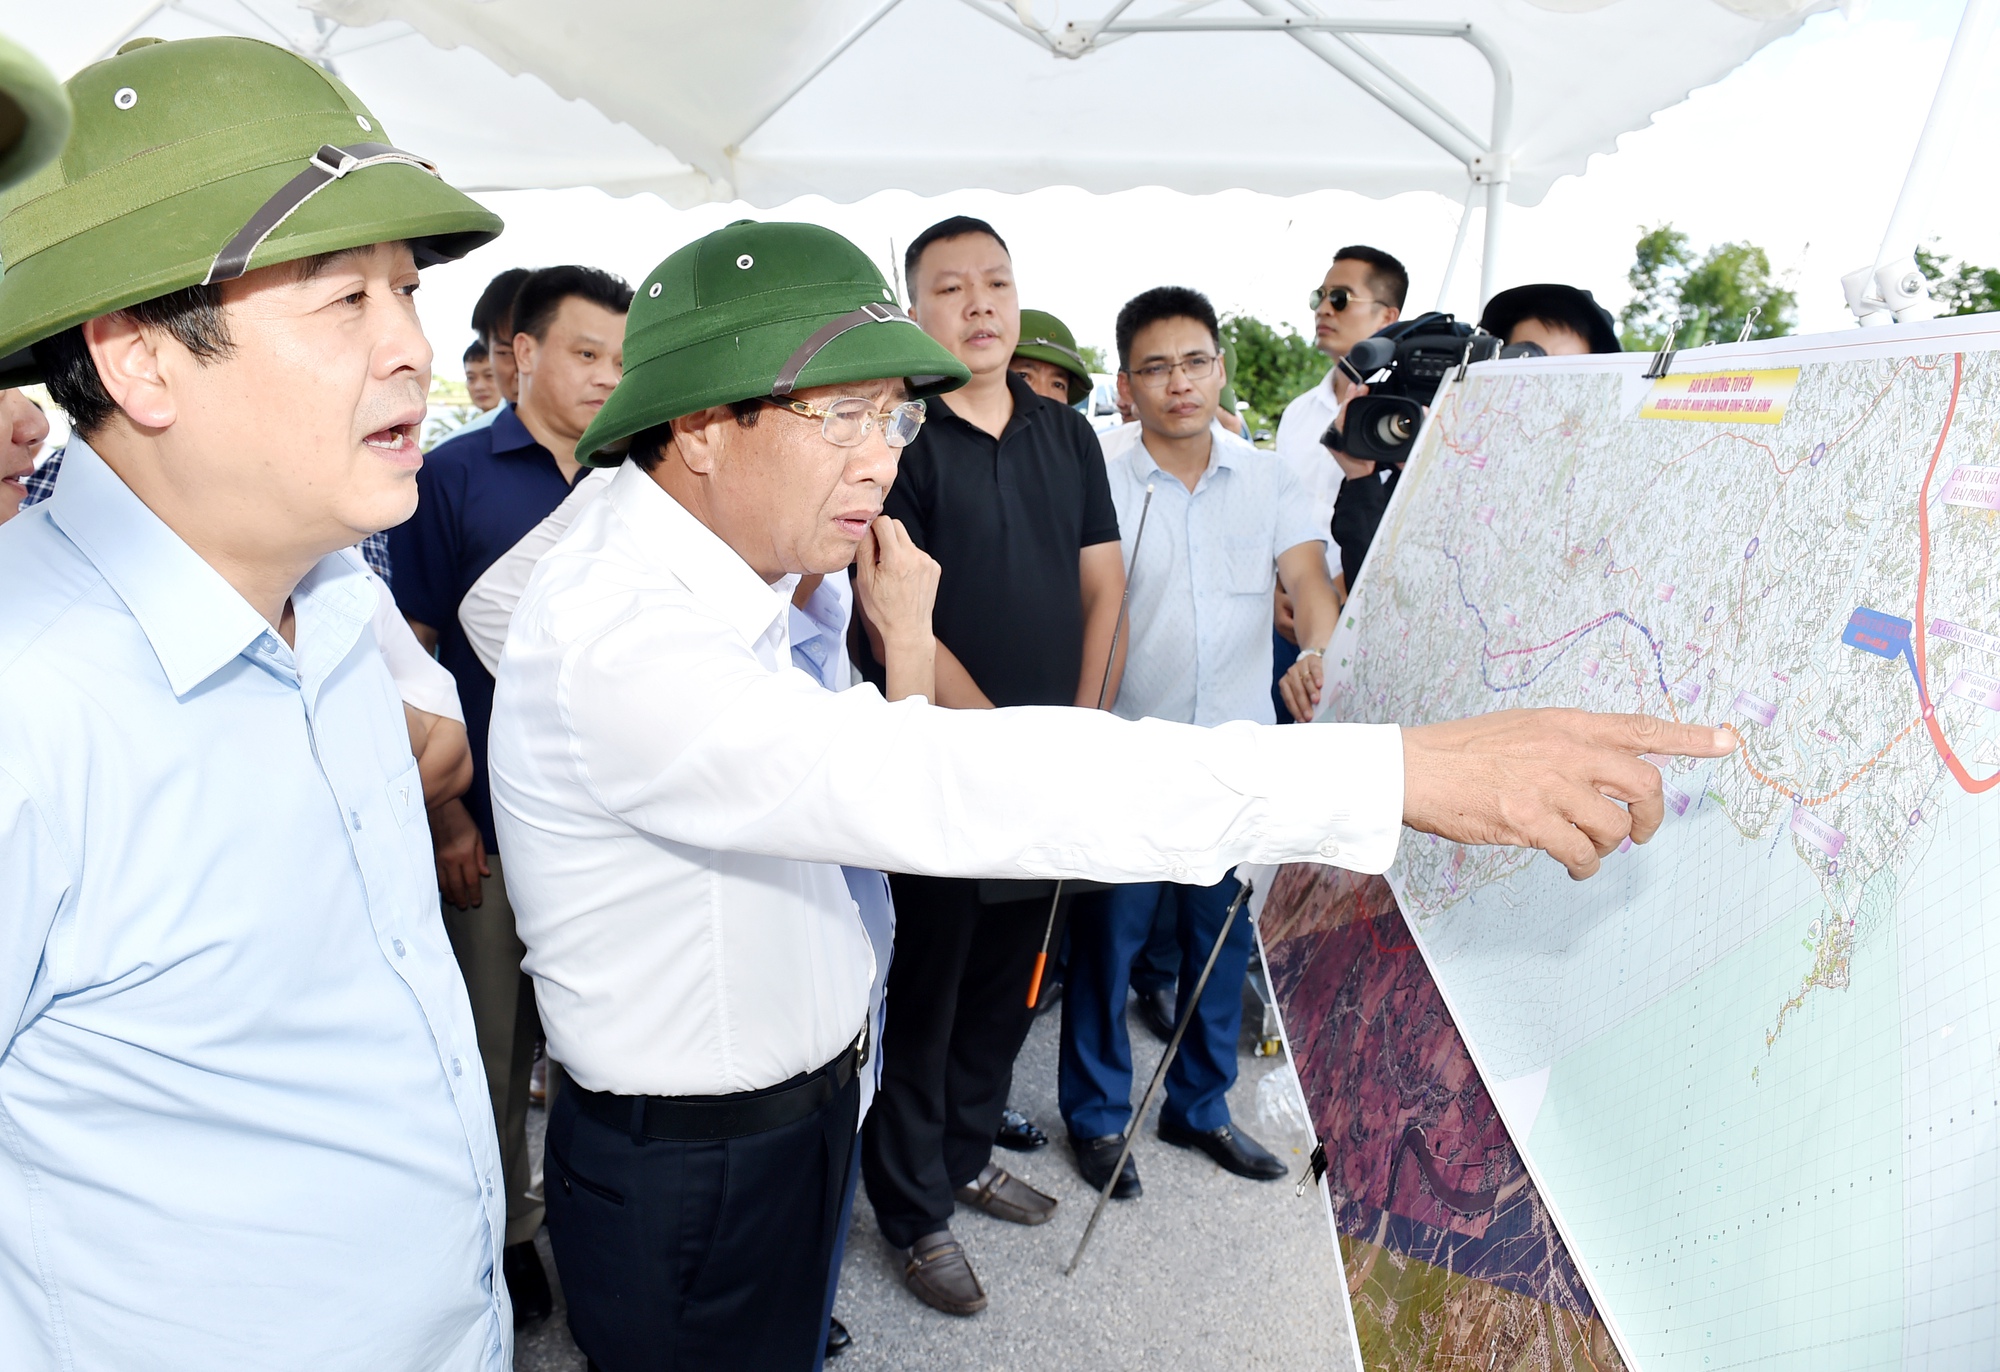 Với tốc độ phát triển của kinh tế, cao tốc Ninh Bình - Hải Phòng trên bản đồ 2024 đã trở thành cầu nối quan trọng giữa các tỉnh miền Trung với địa phương ven biển phía Bắc. Cùng khám phá những điểm đến mới và trải nghiệm hành trình sạch với cơ sở hạ tầng tiện nghi tại đây nhé.